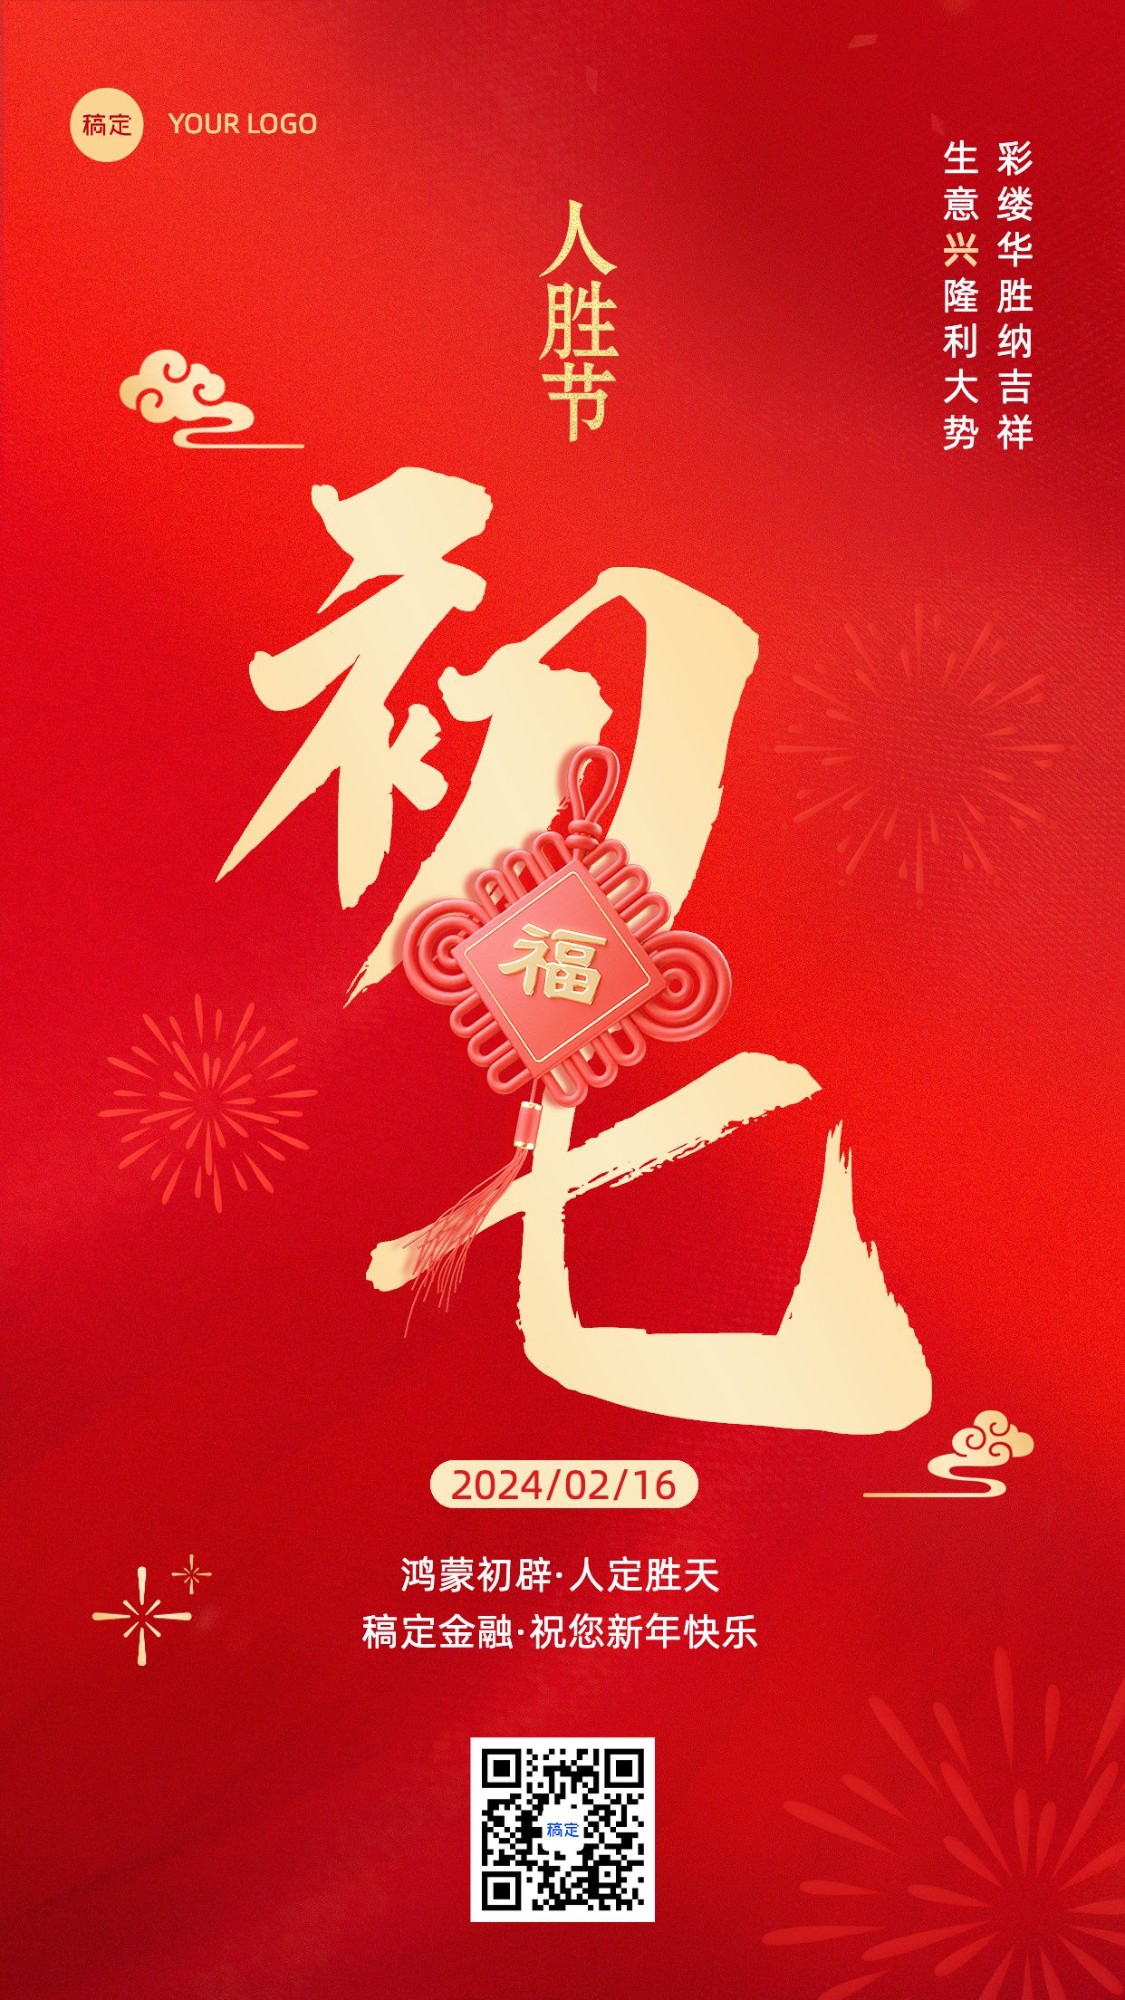 春节正月初七金融保险节日祝福喜庆大字手机海报套系预览效果